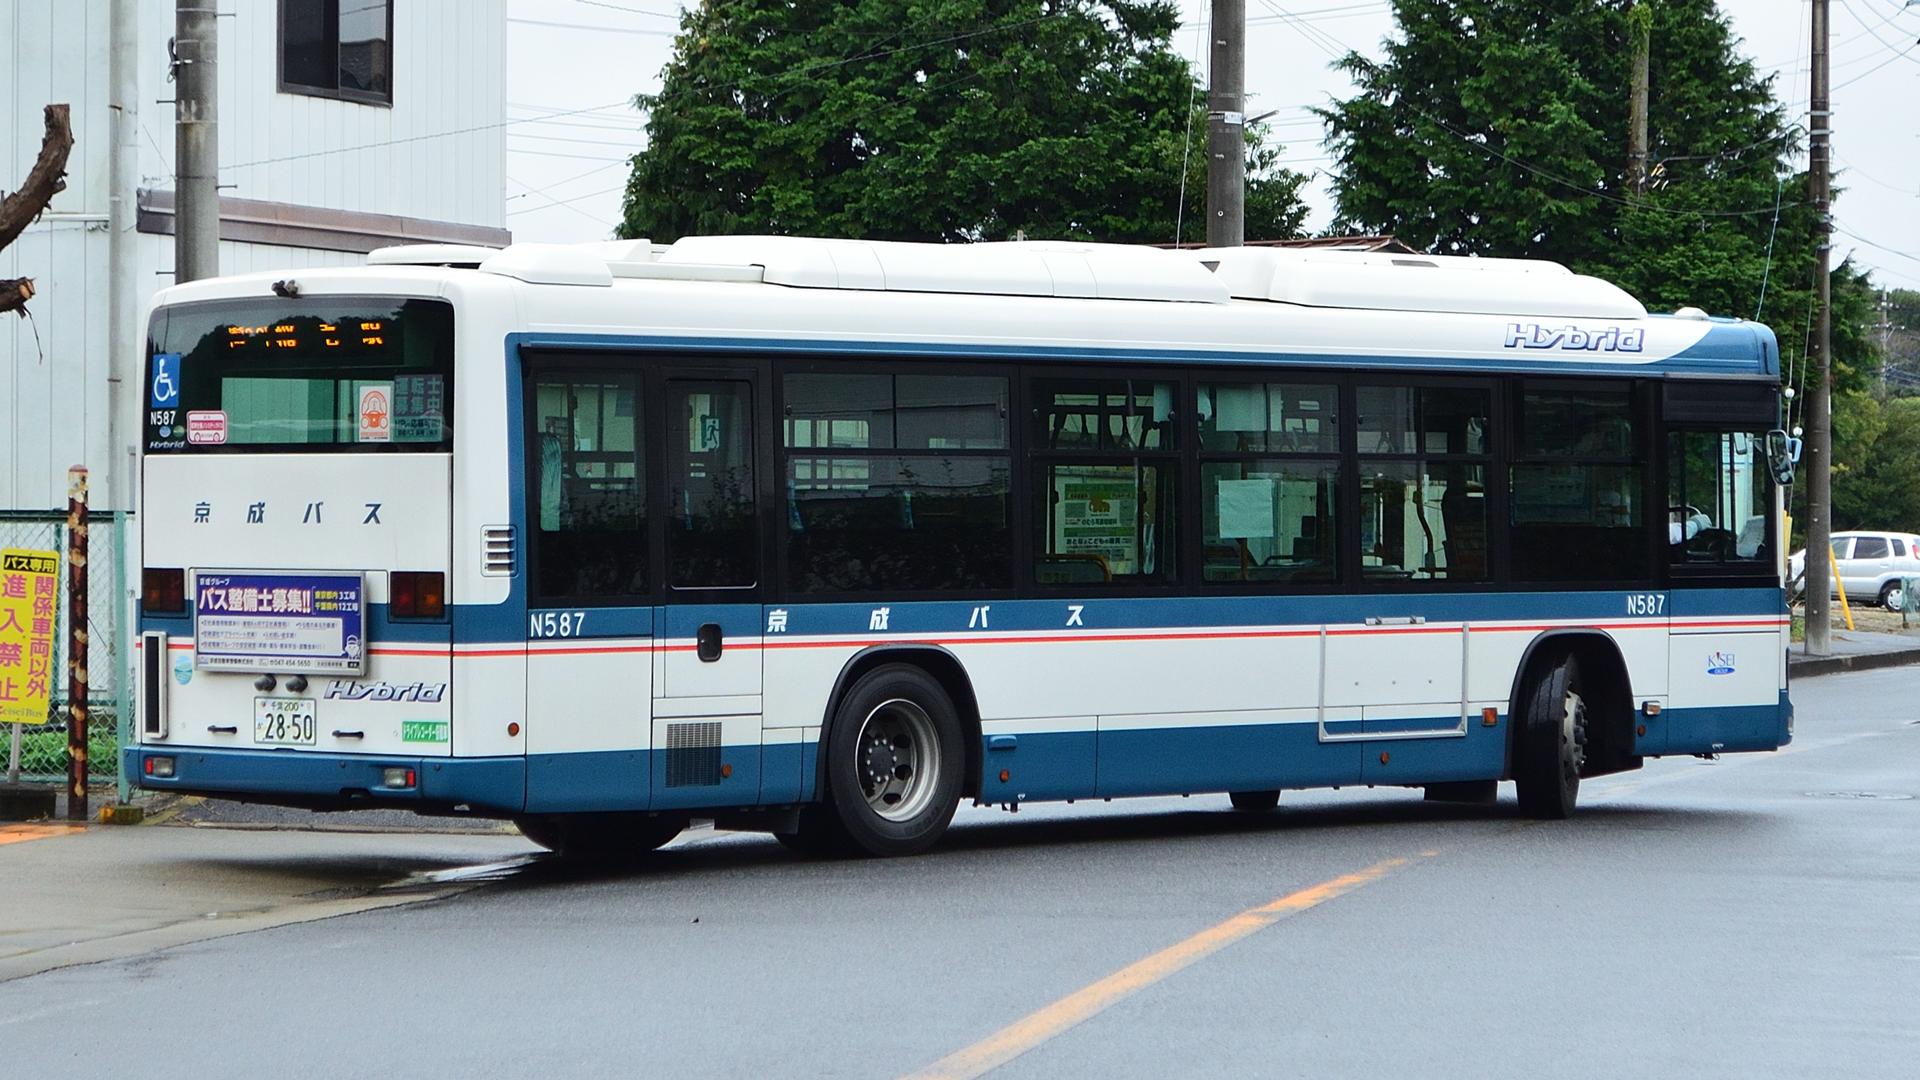 N587 - 京成バス長沼営業所データベース